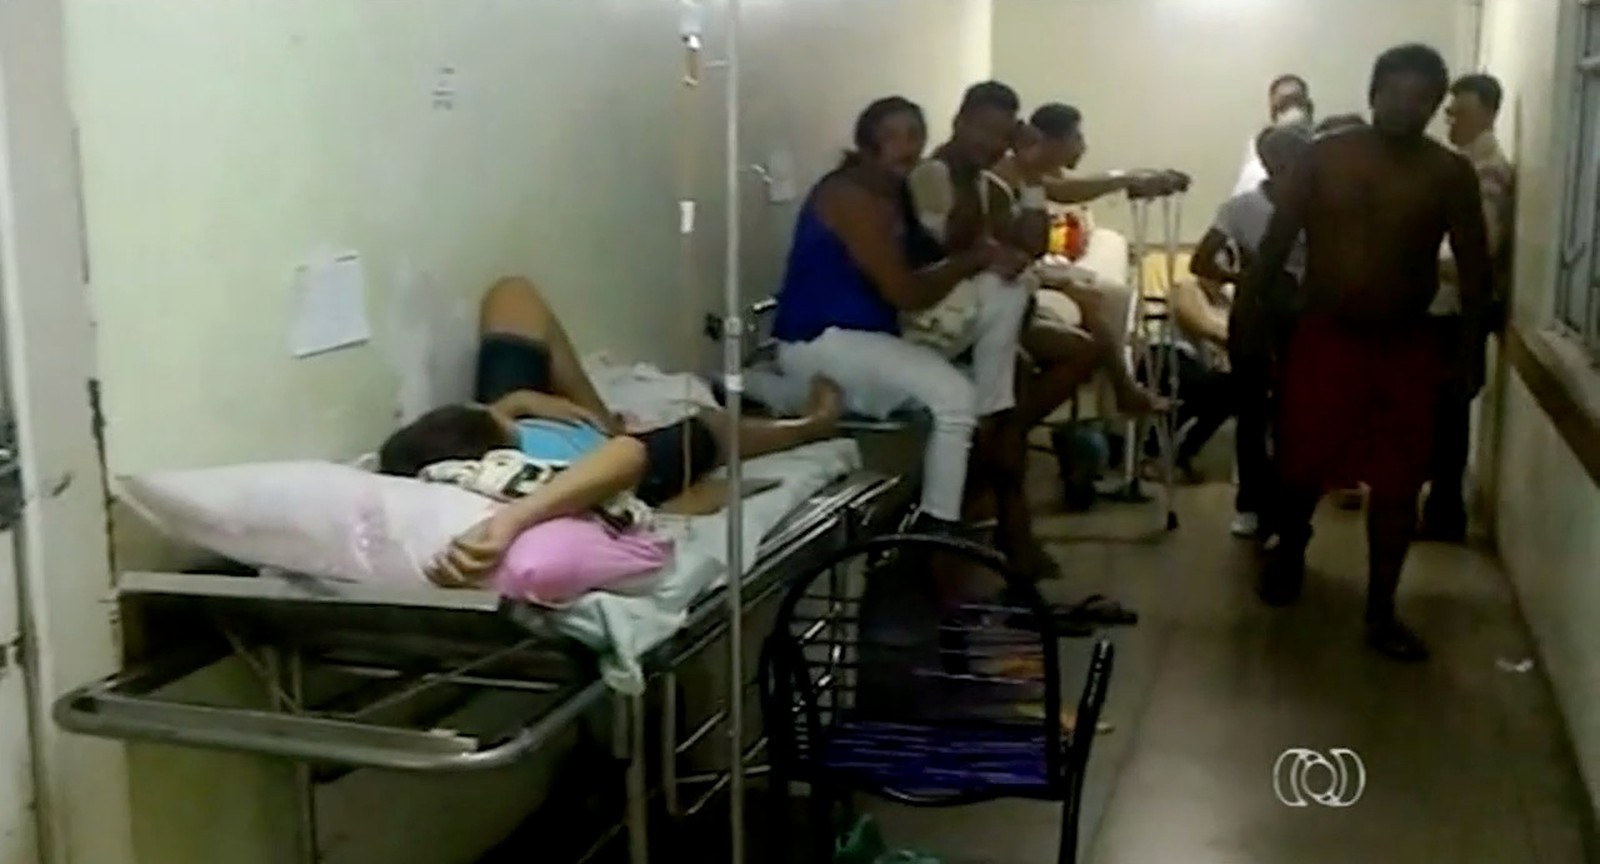 Pacientes internados em corredor dividem espaço com lixo acumulado em hospital (Foto: Reprodução/TV Anhanguera)